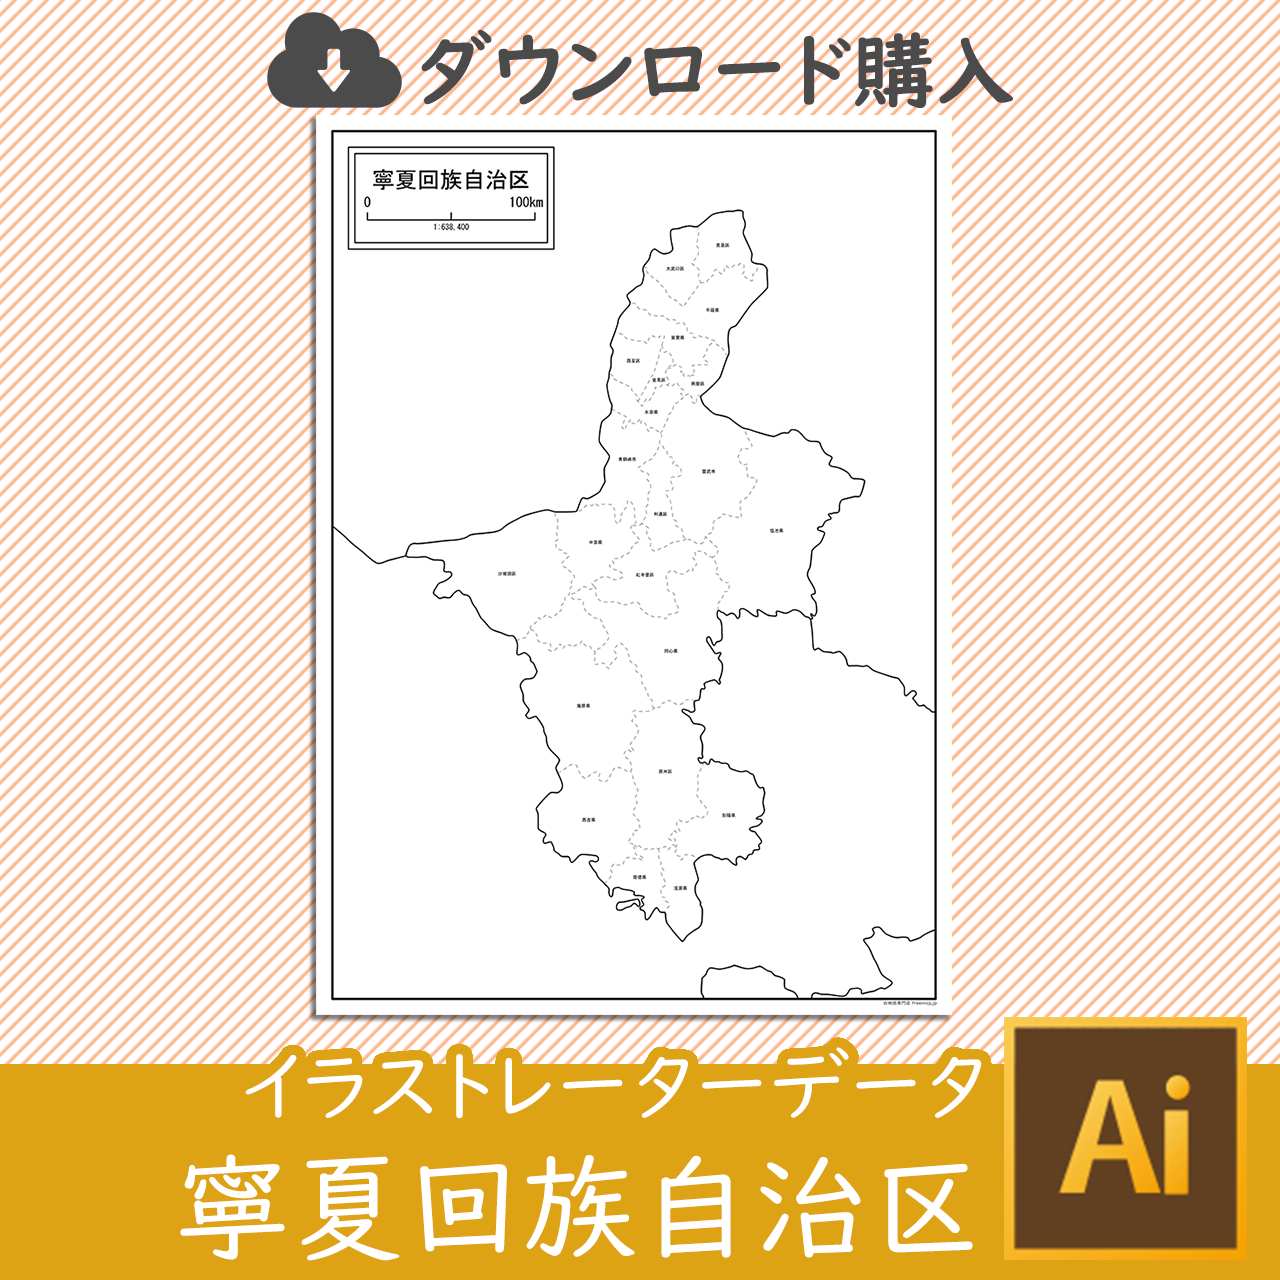 寧夏回族自治区の白地図データのサムネイル画像